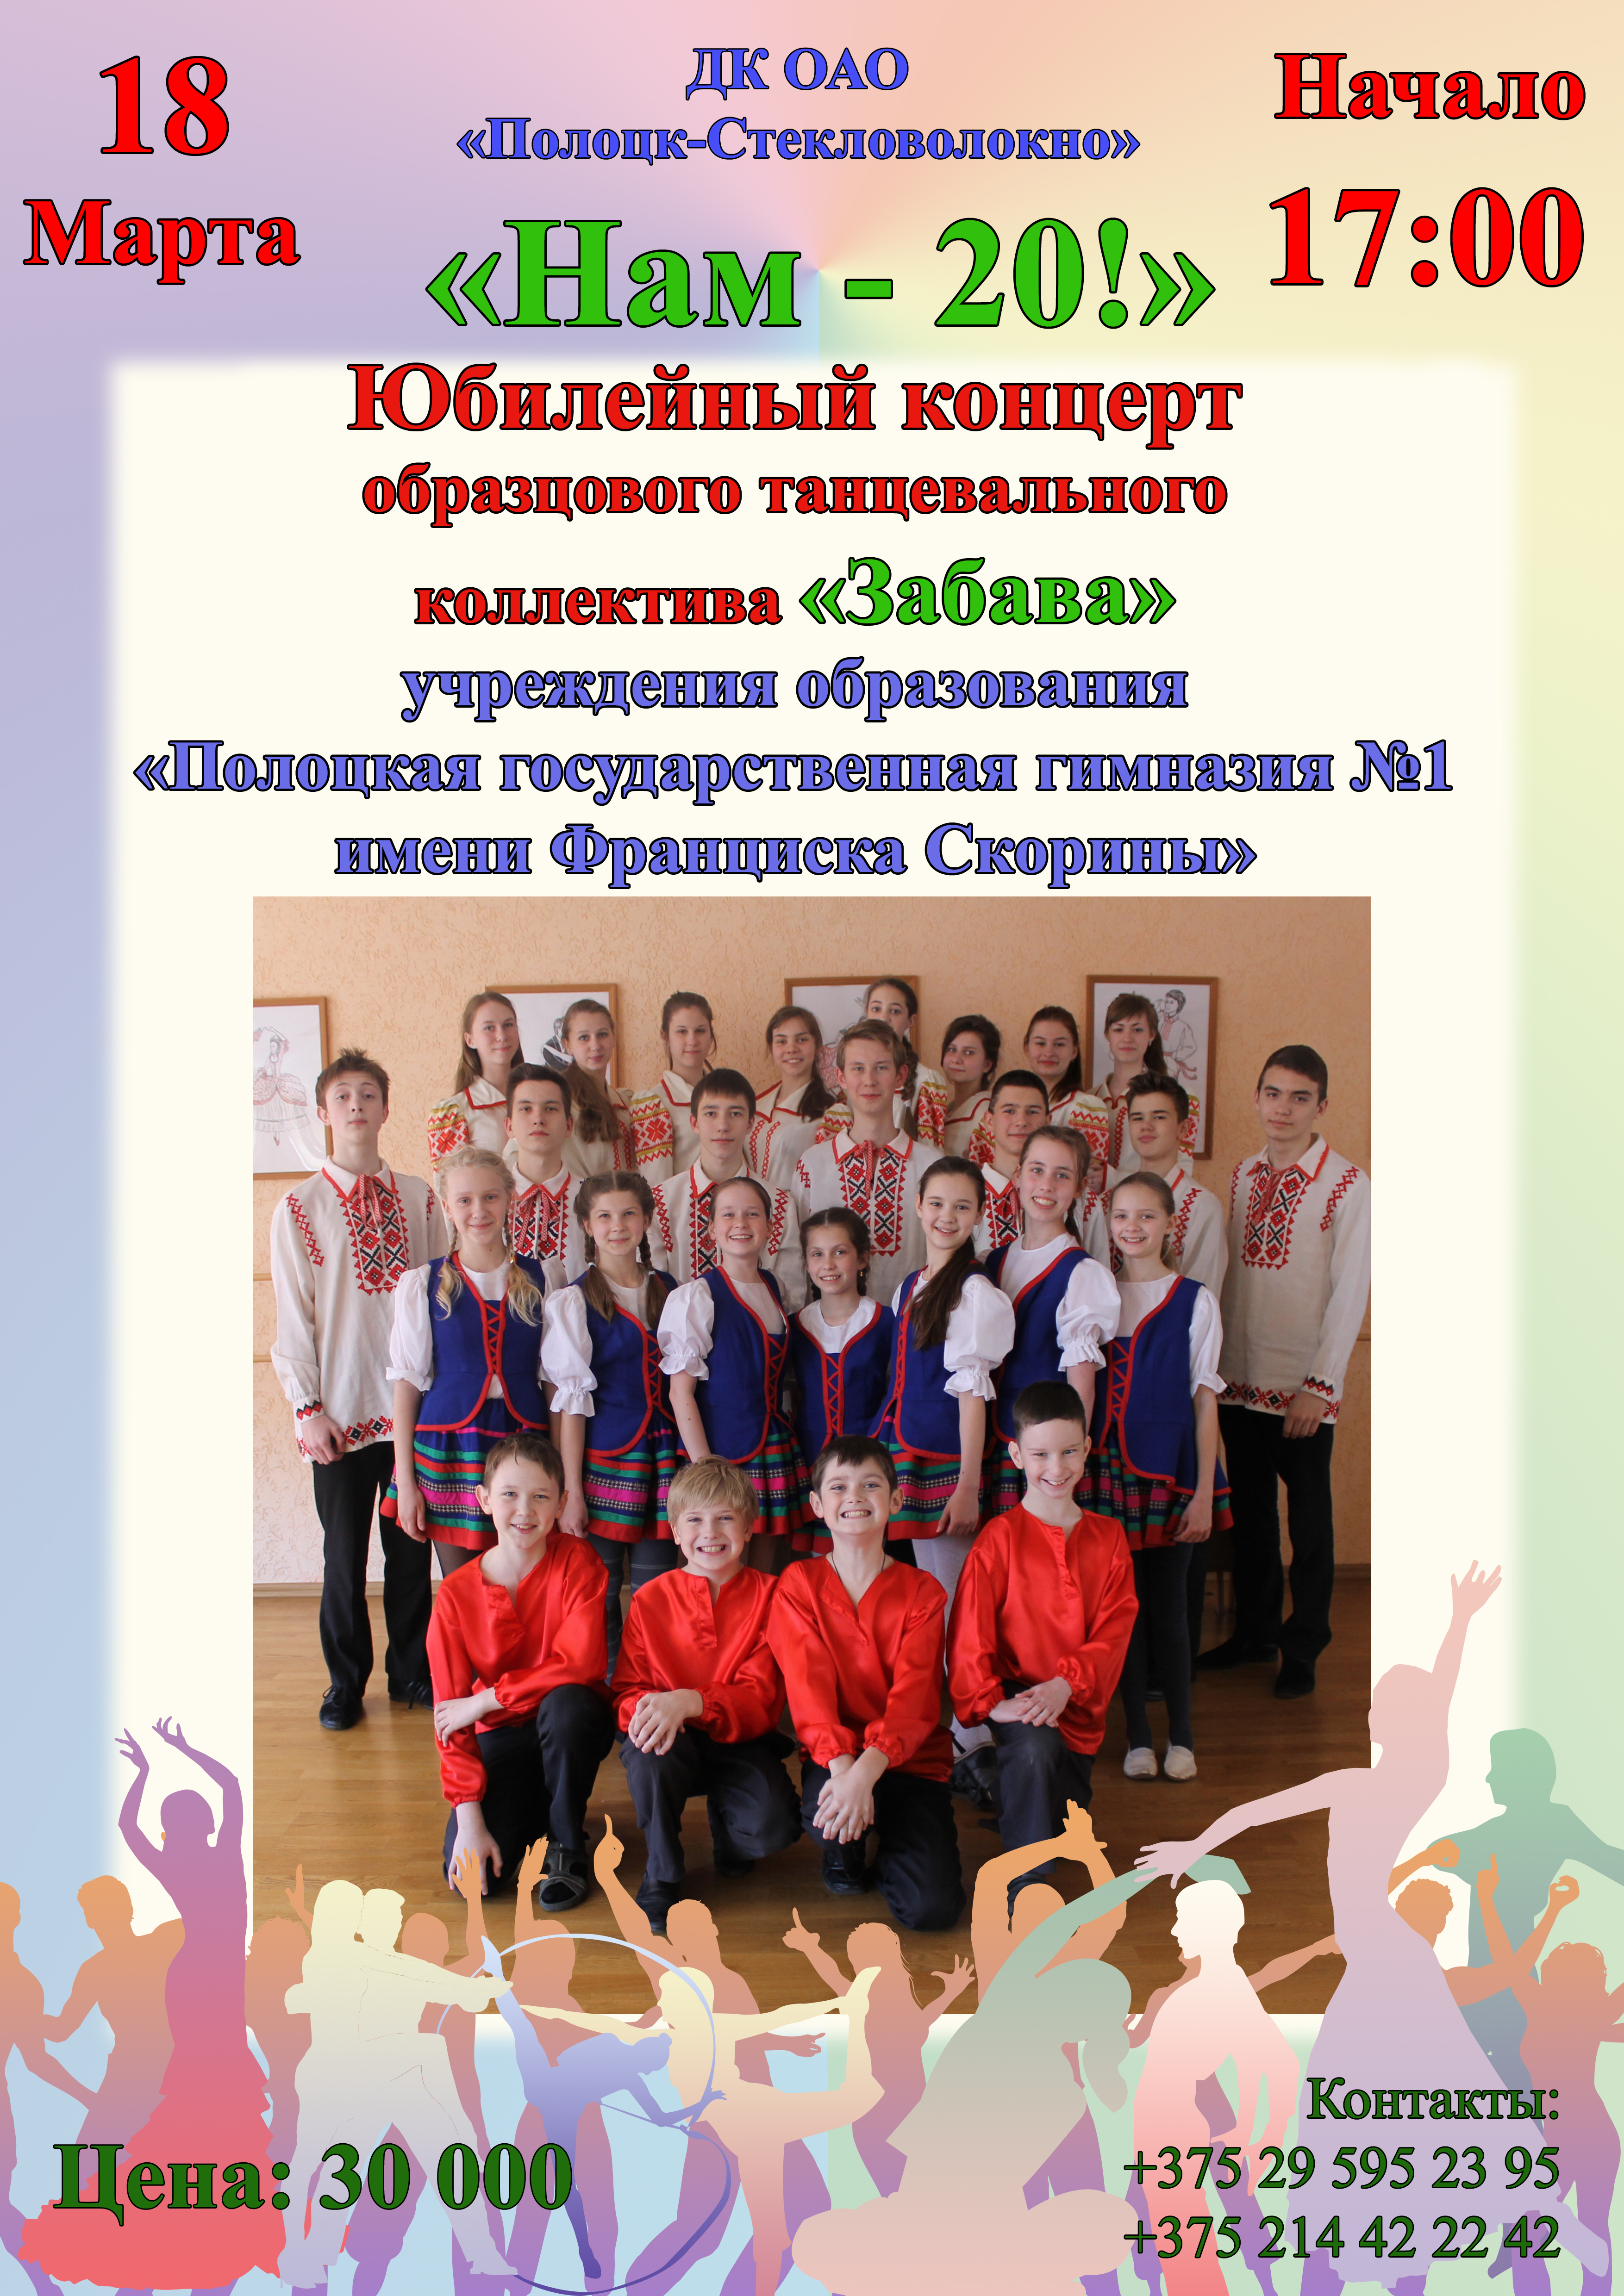 18 марта юбилейный концерт танцевального коллектива 